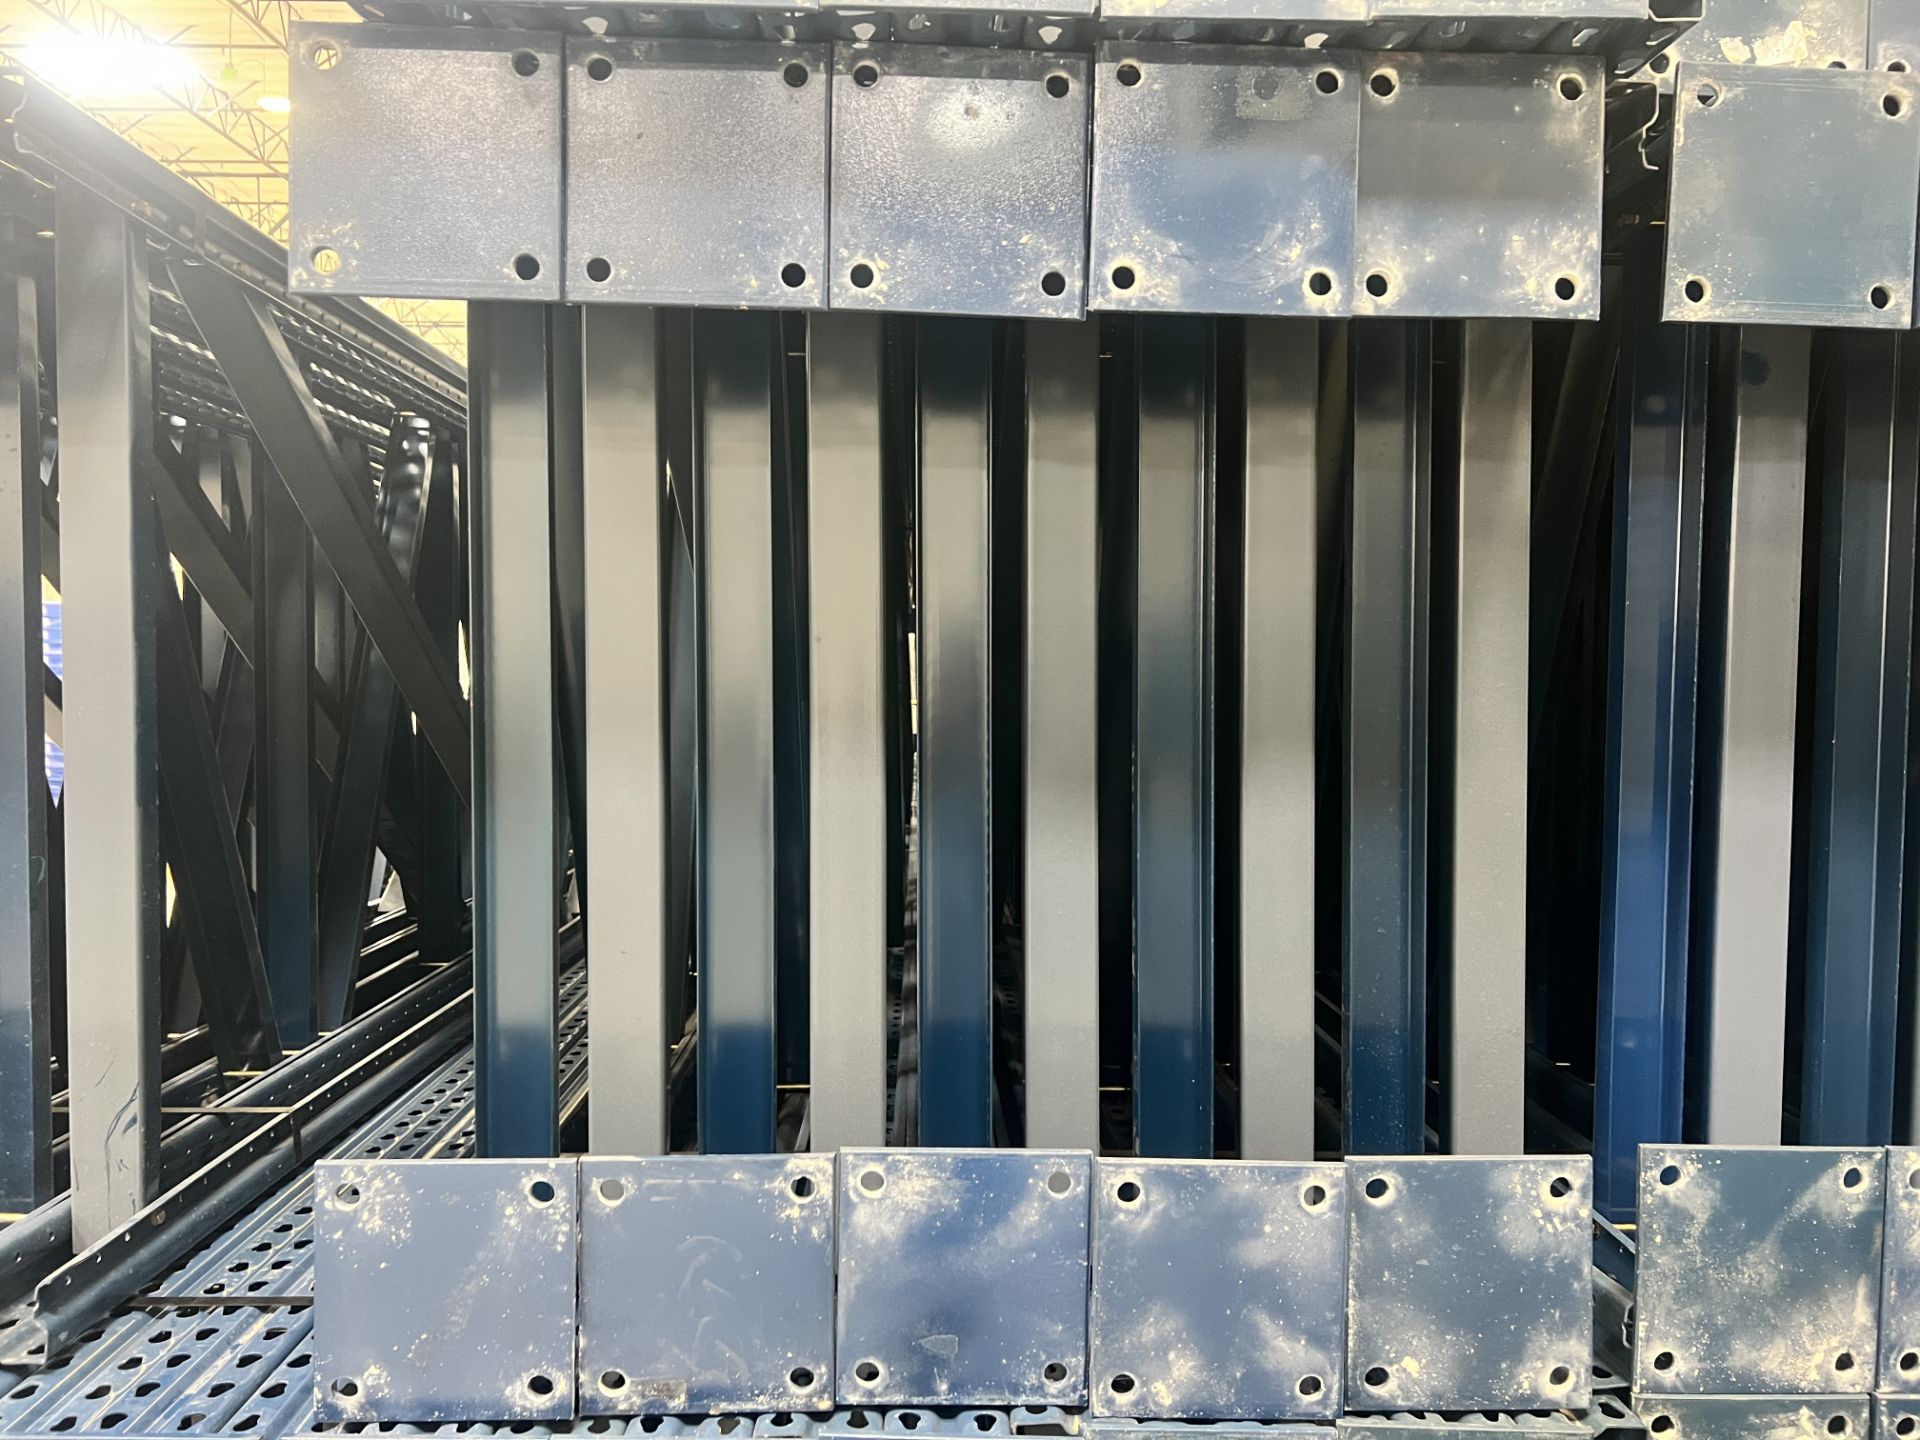 Mecalux Tear Drop Pallet Rack Upright Frame 42" x 28' - Image 8 of 11